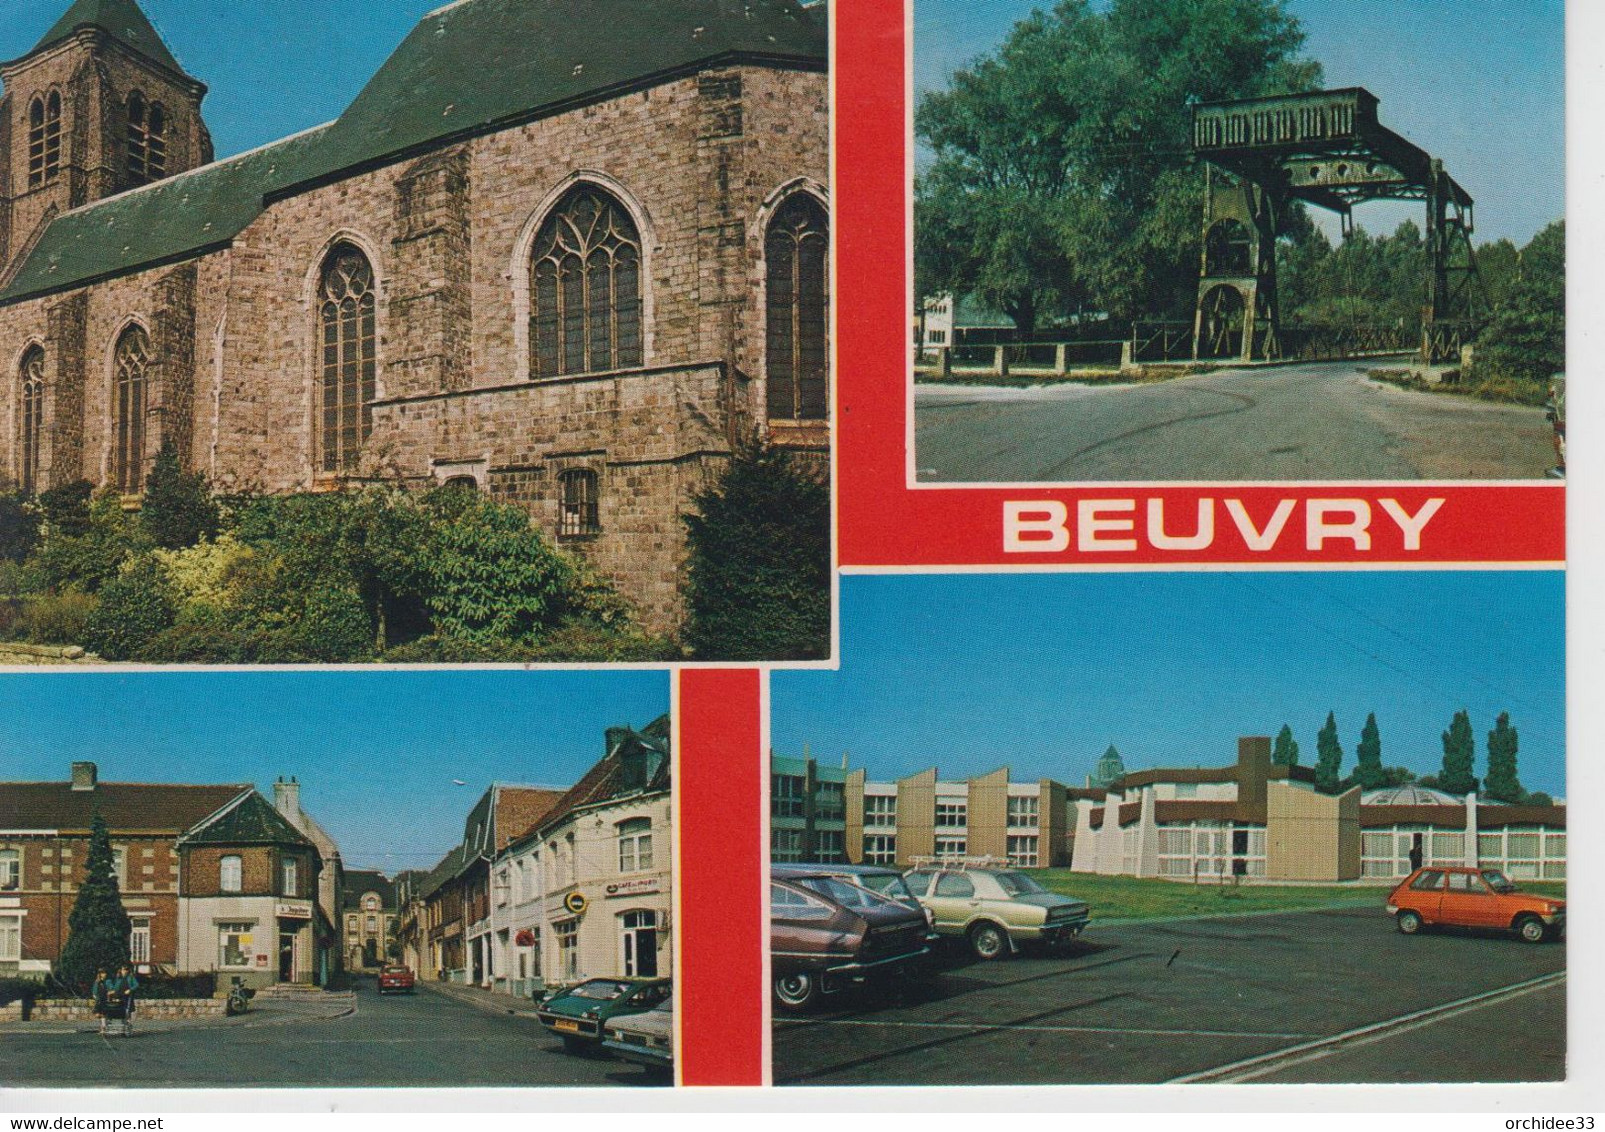 CPSM Beuvry (avec 4 Vues : L'église St-Martin, Le Pont Dominique, La Place R. Salengro, La Maison Ste-Camille) - Beuvry